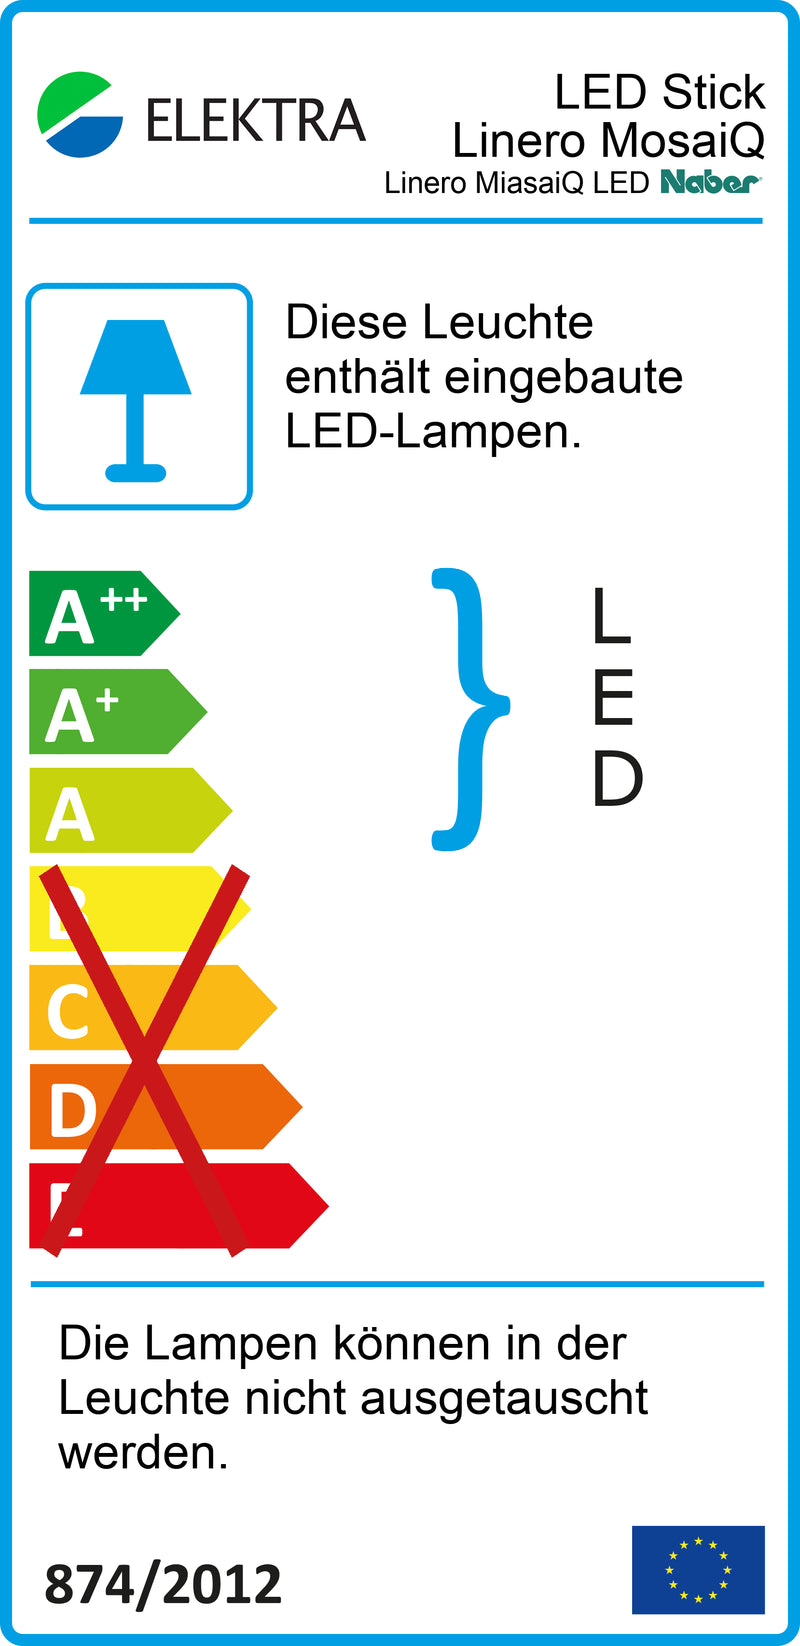 E-Label zu Linero MosaiQ LED Stripe als Variante L 1200 mm von Naber GmbH in der Kategorie Nischenausstattung in Österreich auf conceptshop.at